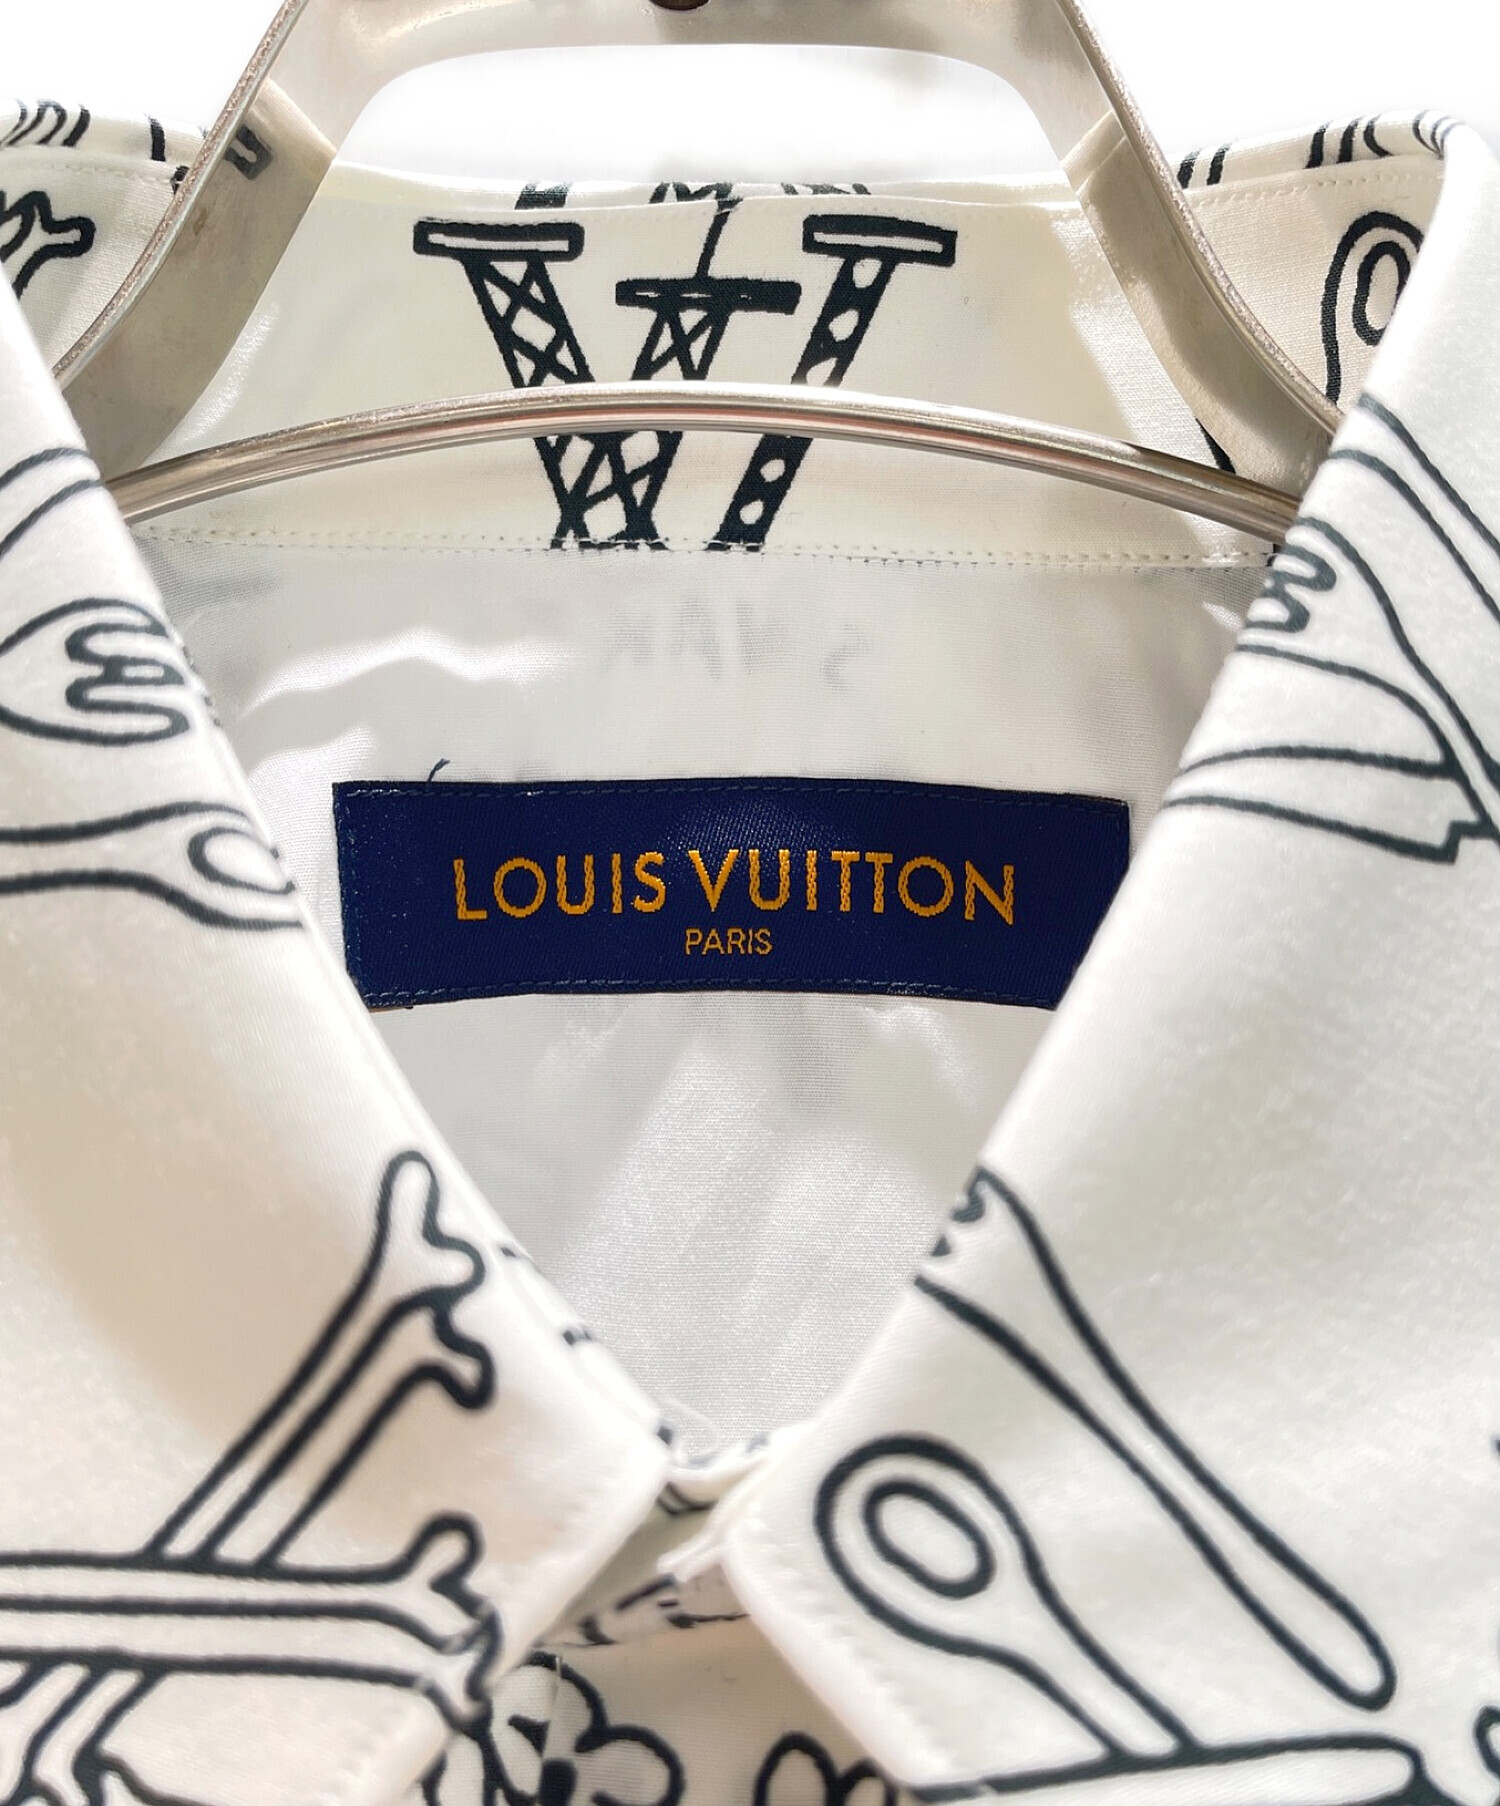 LOUIS VUITTON×Virgil Abloh (ルイヴィトン ヴァージル・アブロー) モノグラムプレイスグラフィックシャツ ホワイト  サイズ:XS